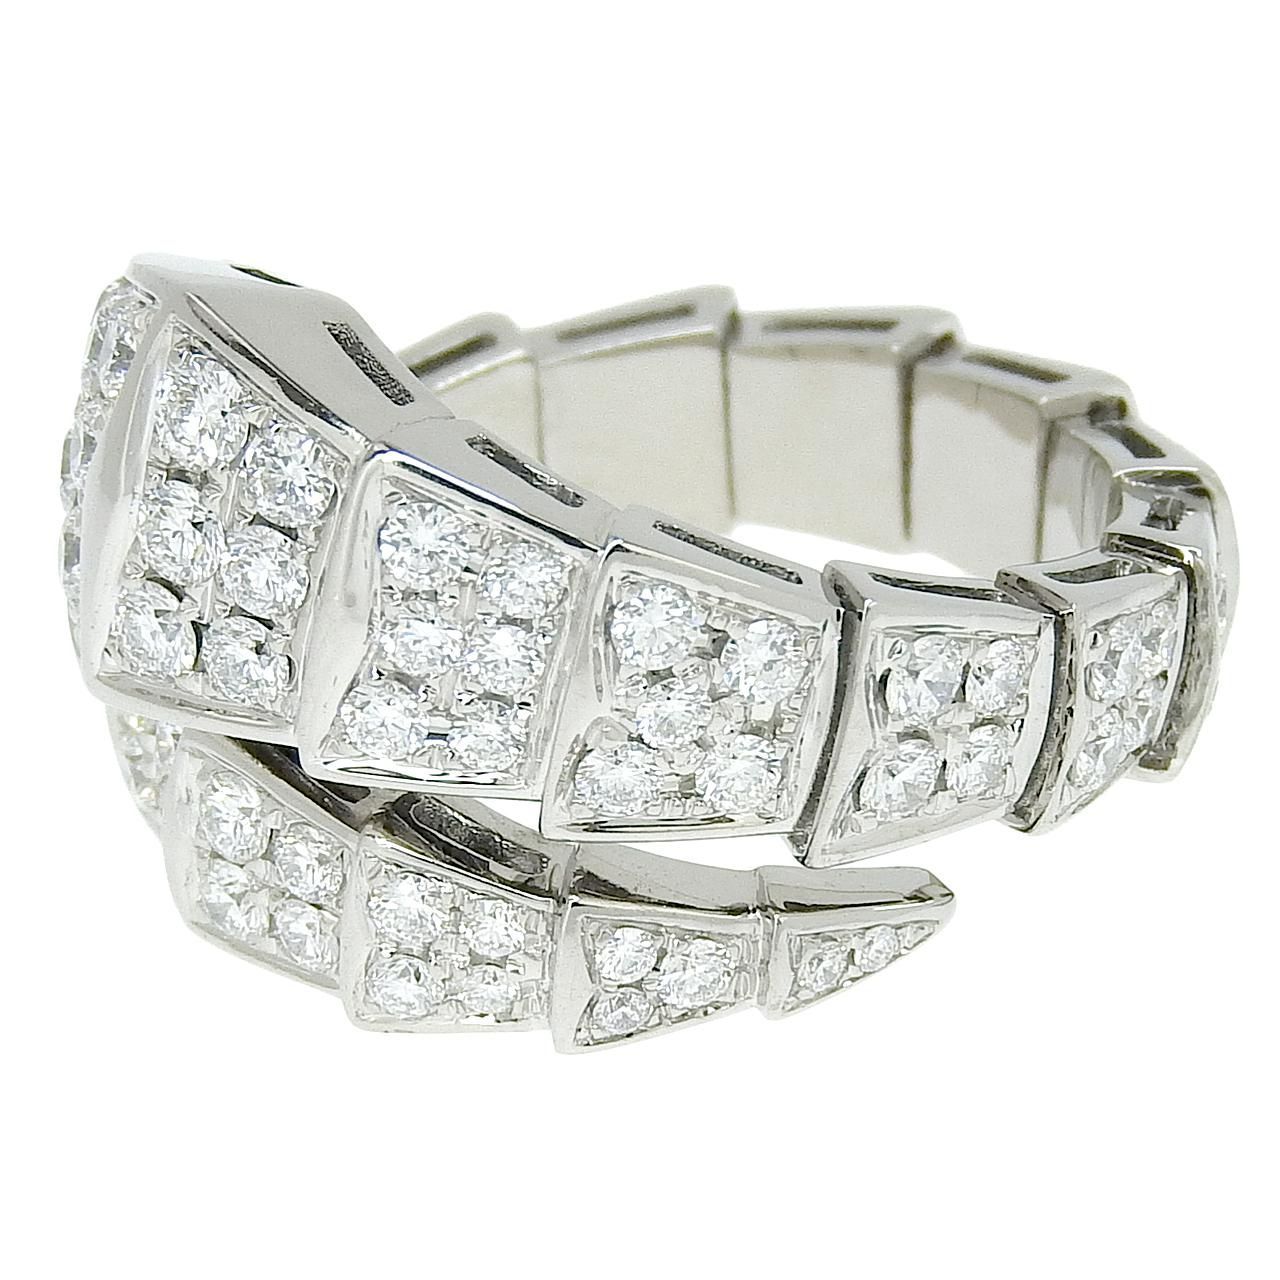 新品仕上げ K18 WG 蛇モチーフ スネーク デザイン リング ダイヤモンド 1.49ct 11.5号 18金 ホワイトゴールド 指輪 ジュエリー